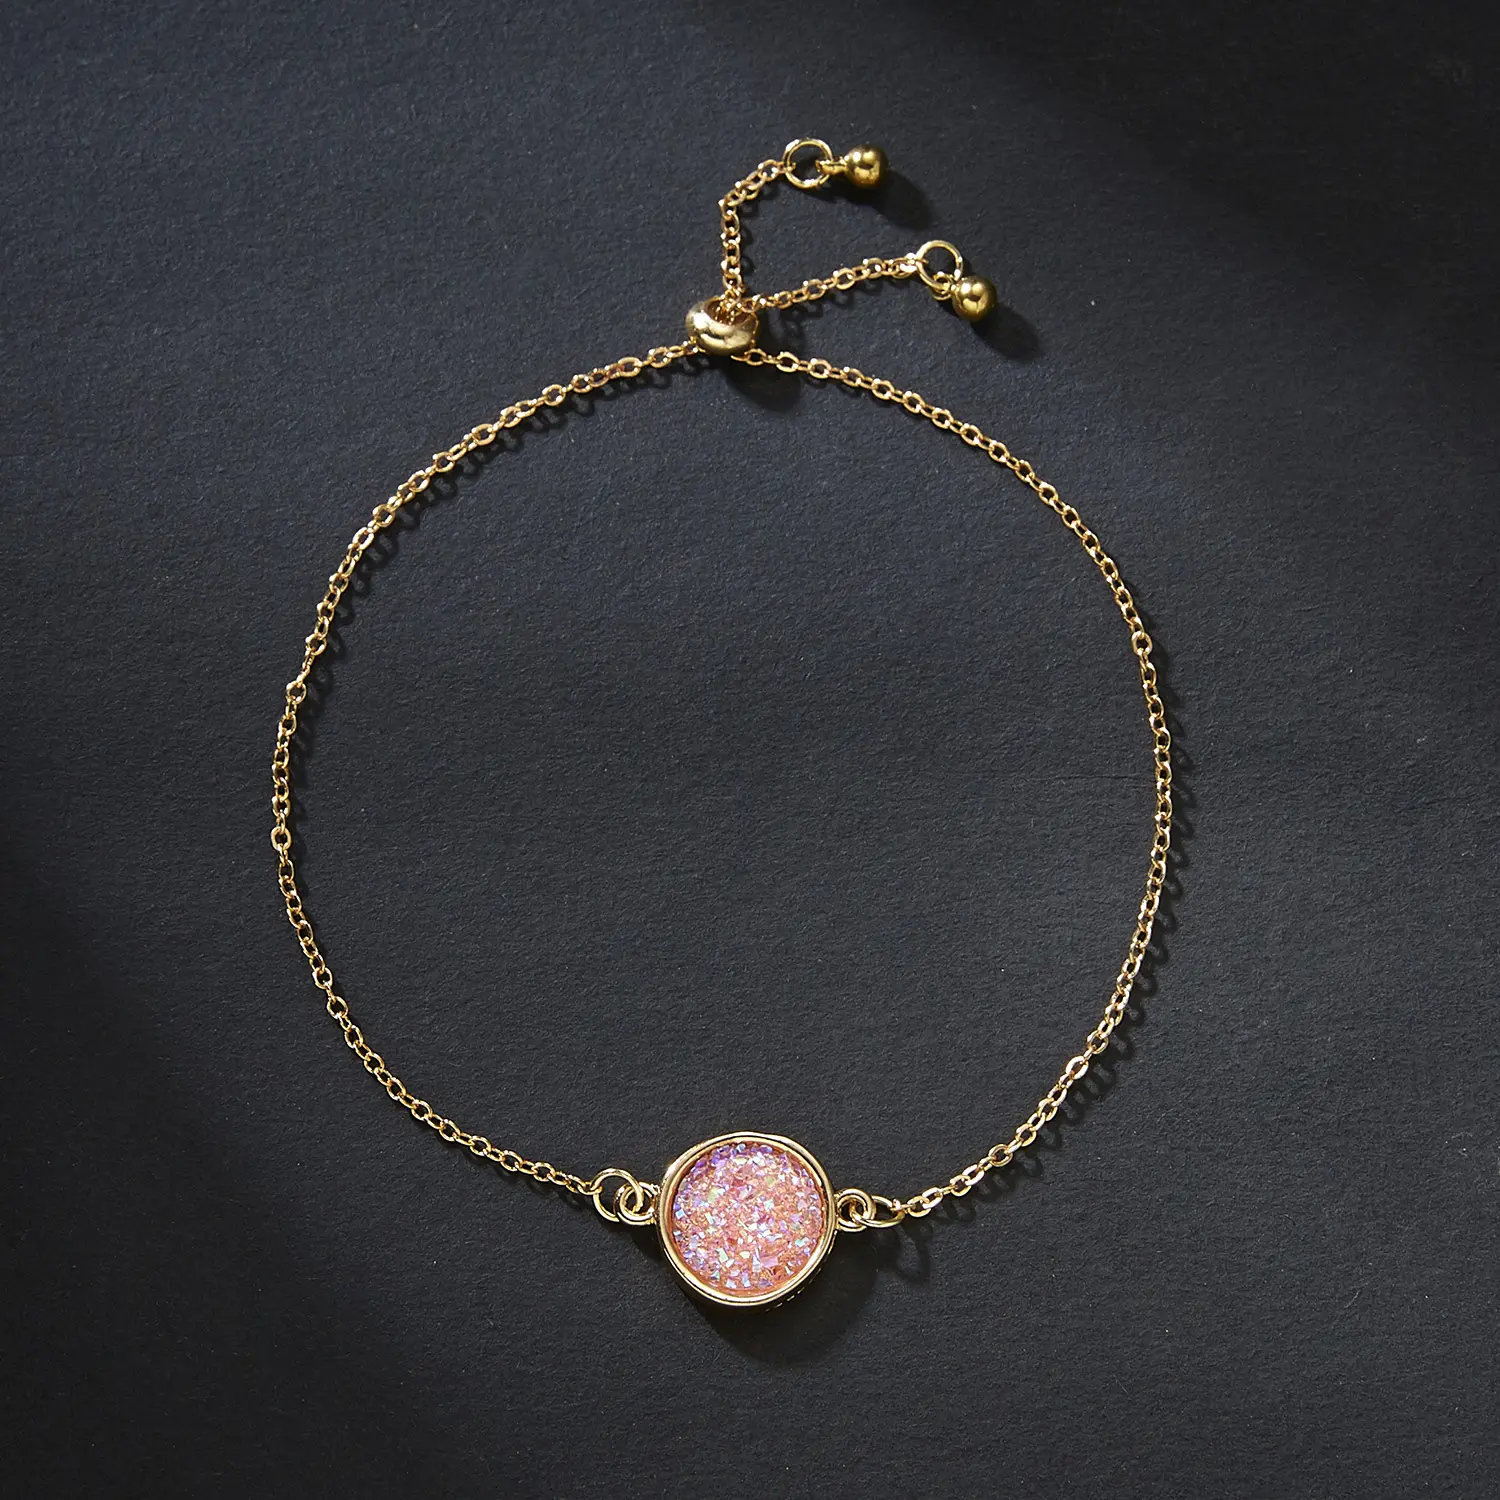 Charm Dainty Genuine Tiny 14 18k Gold Round Drusy Druzy Gold Chain Bracelet Jewelry For Women